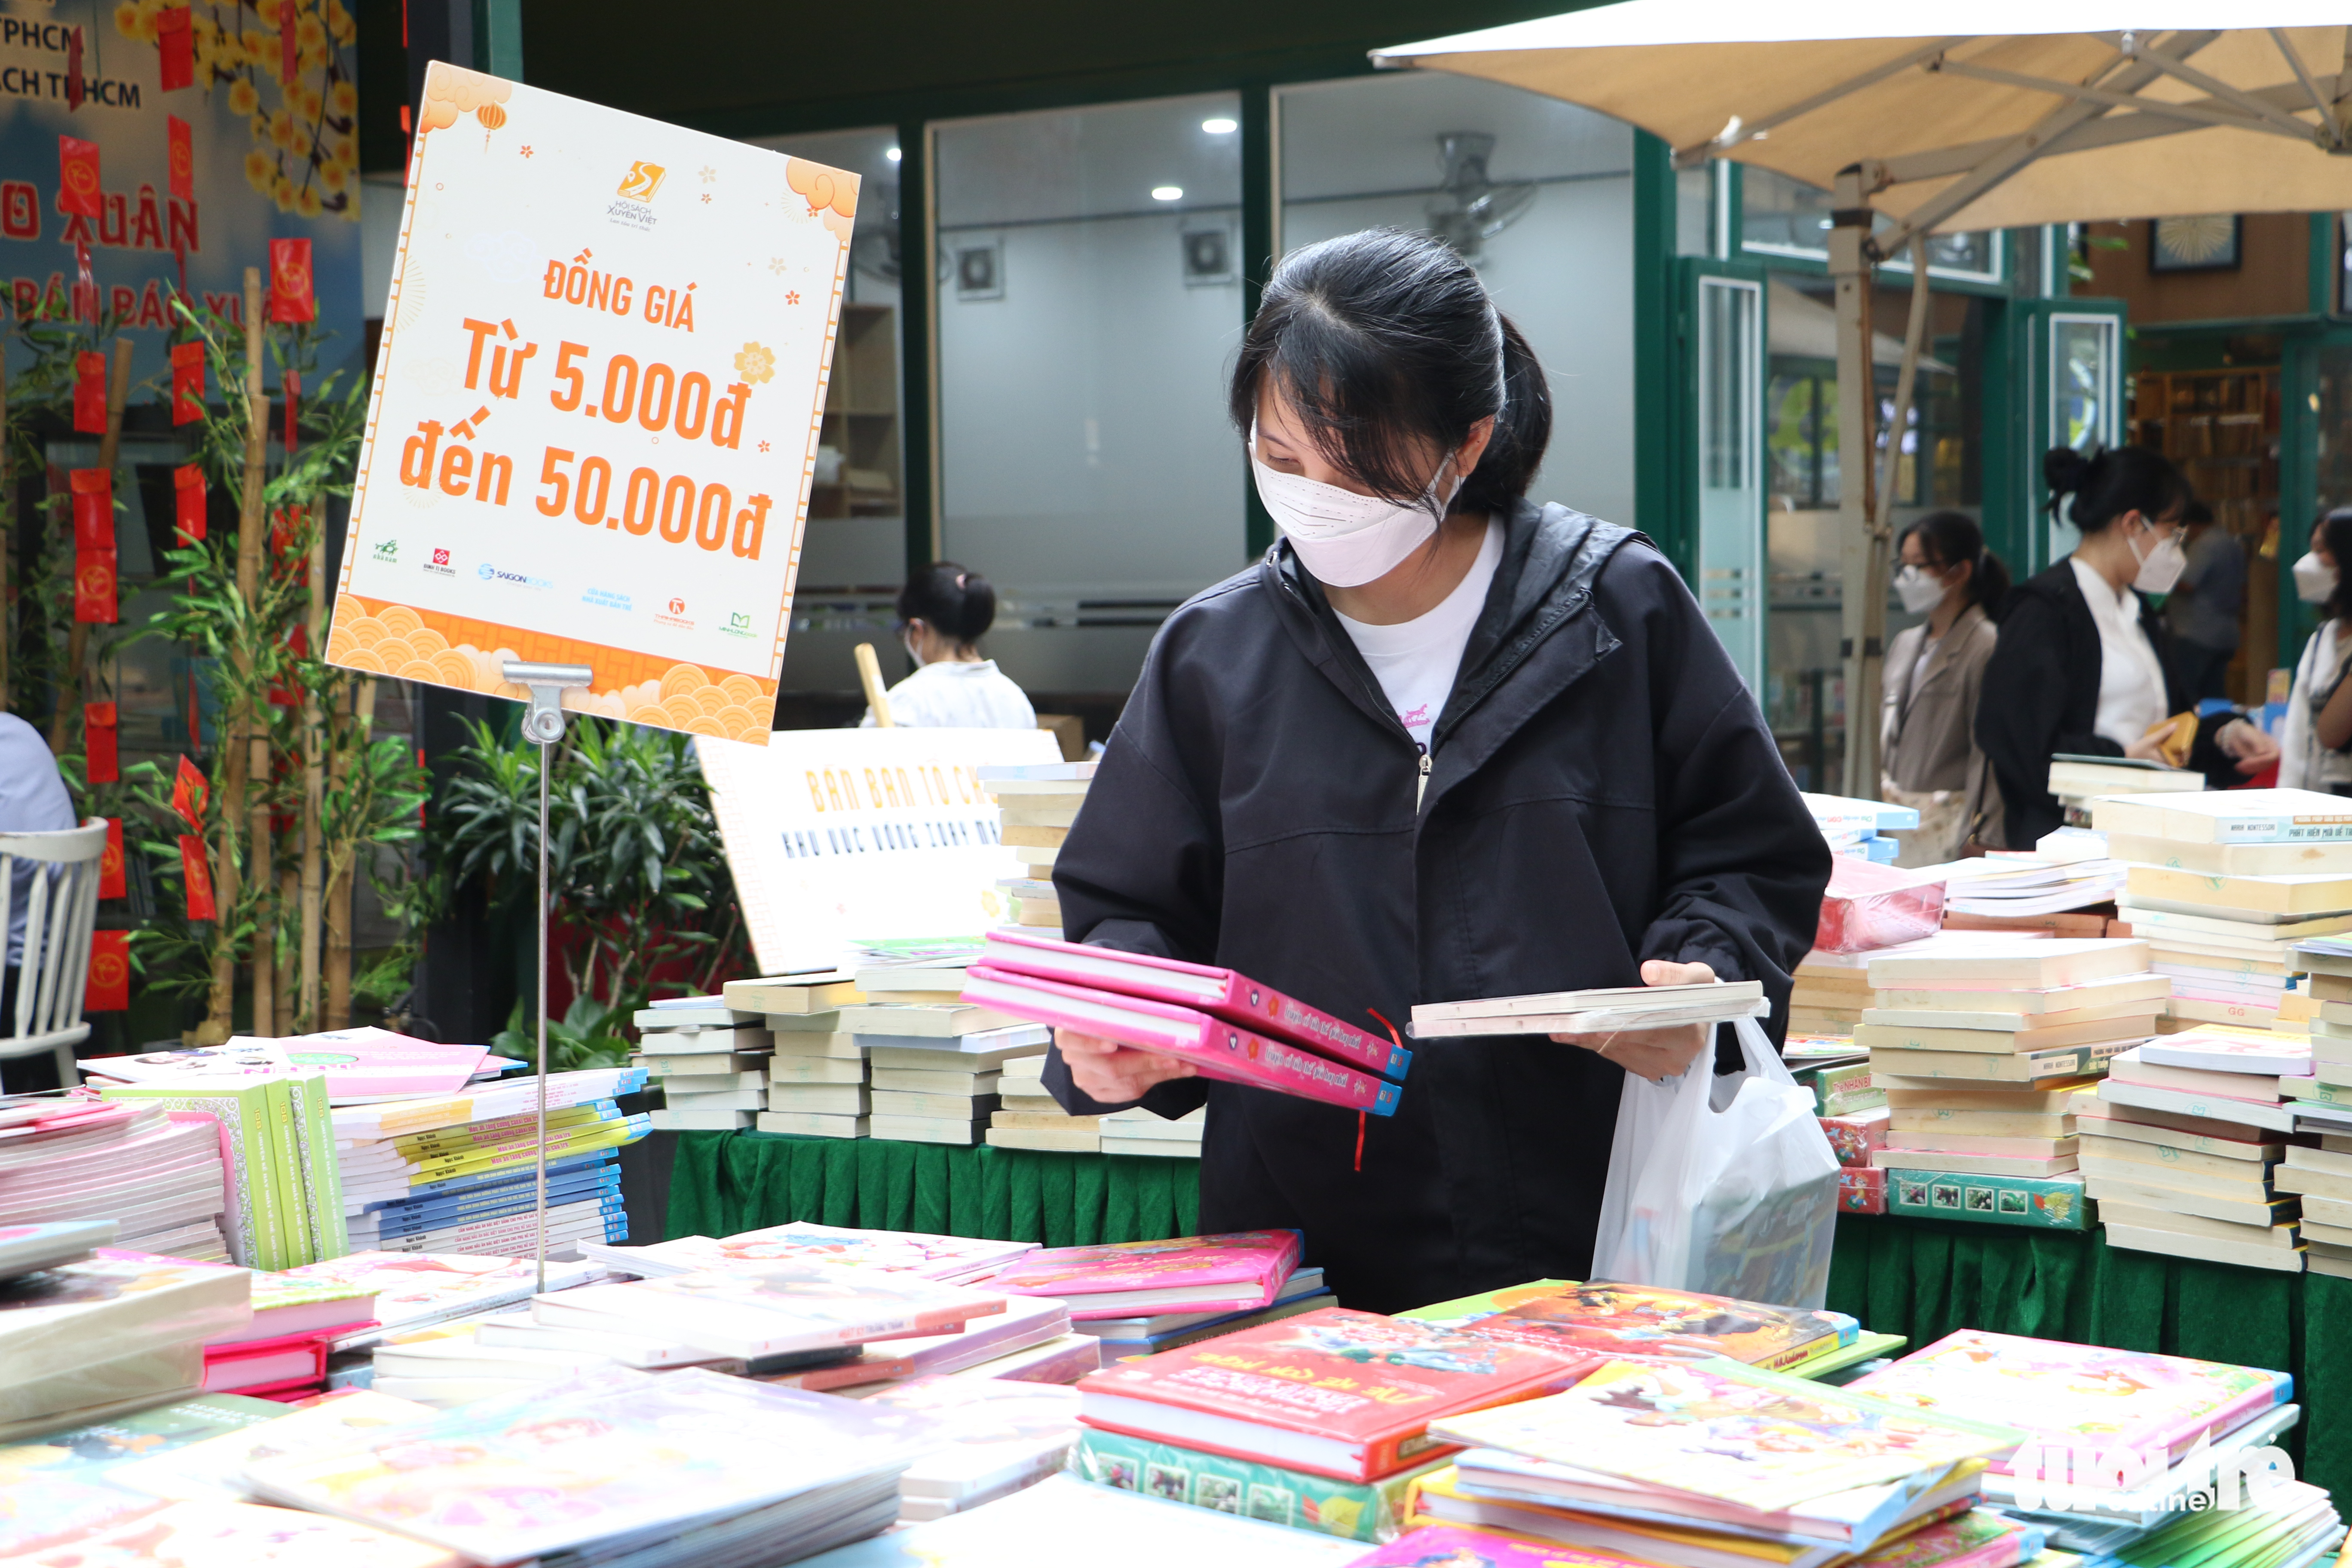 Mê mẩn với hội chợ sách giảm giá còn 5.000 - 10.000 đồng - Ảnh 8.